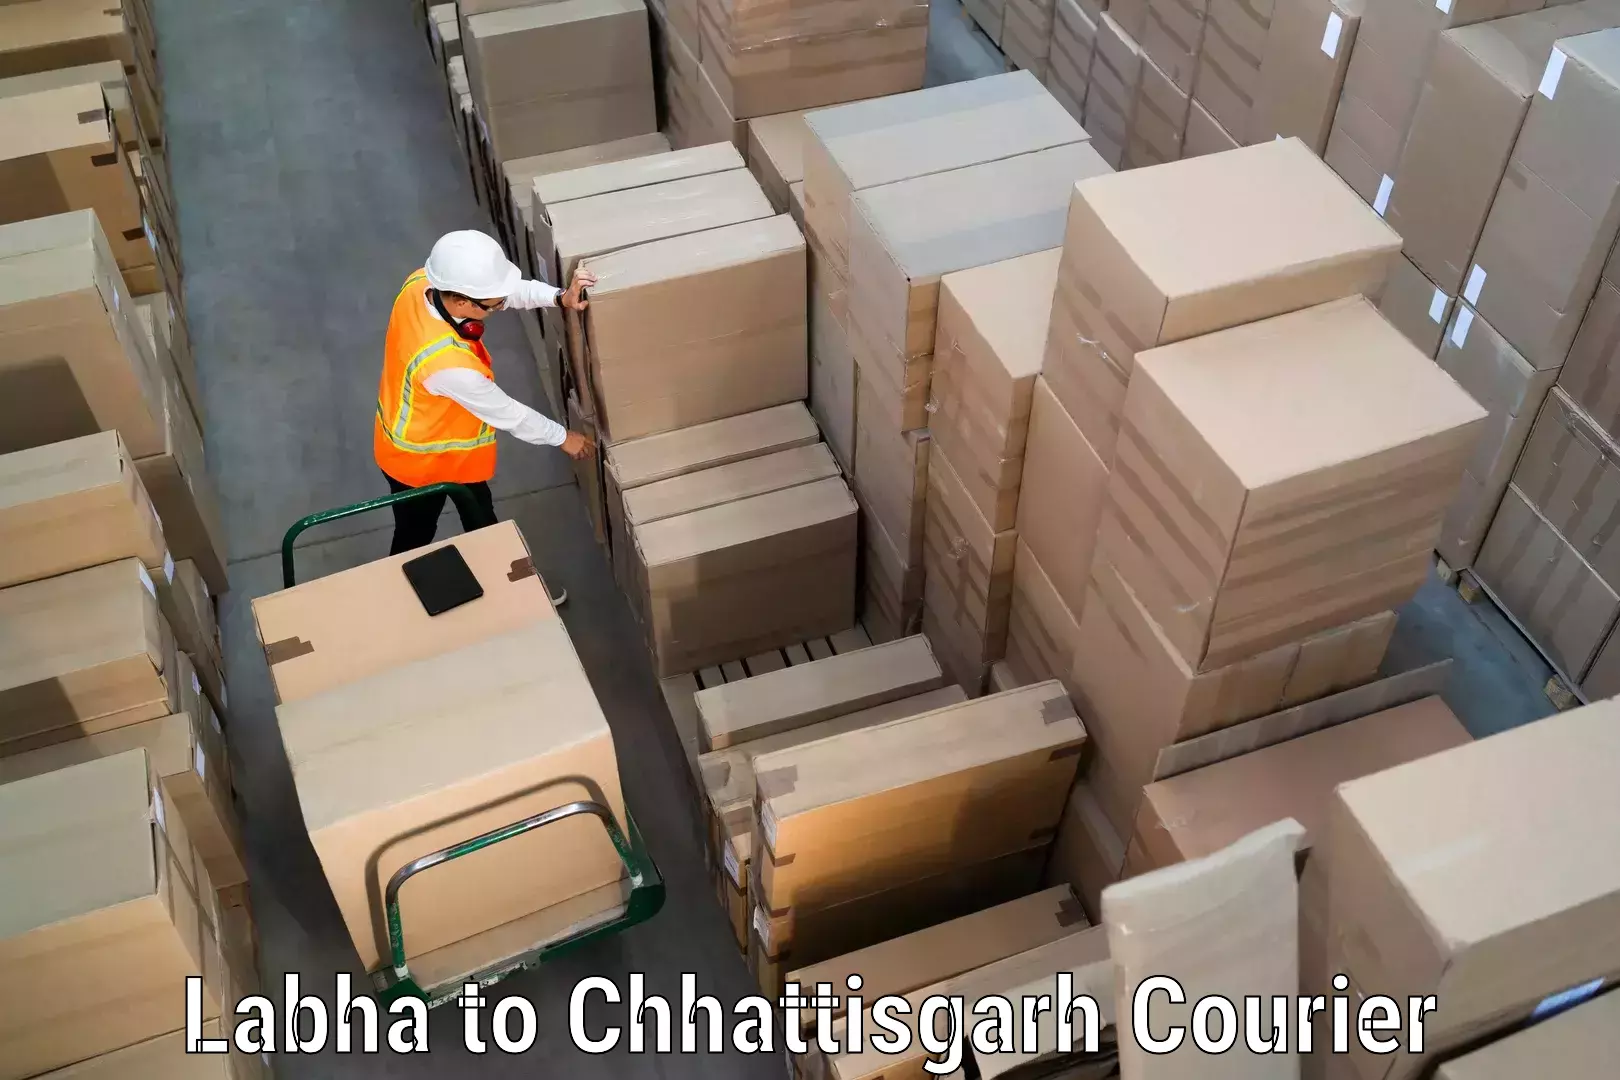 Next-day freight services Labha to Chhattisgarh